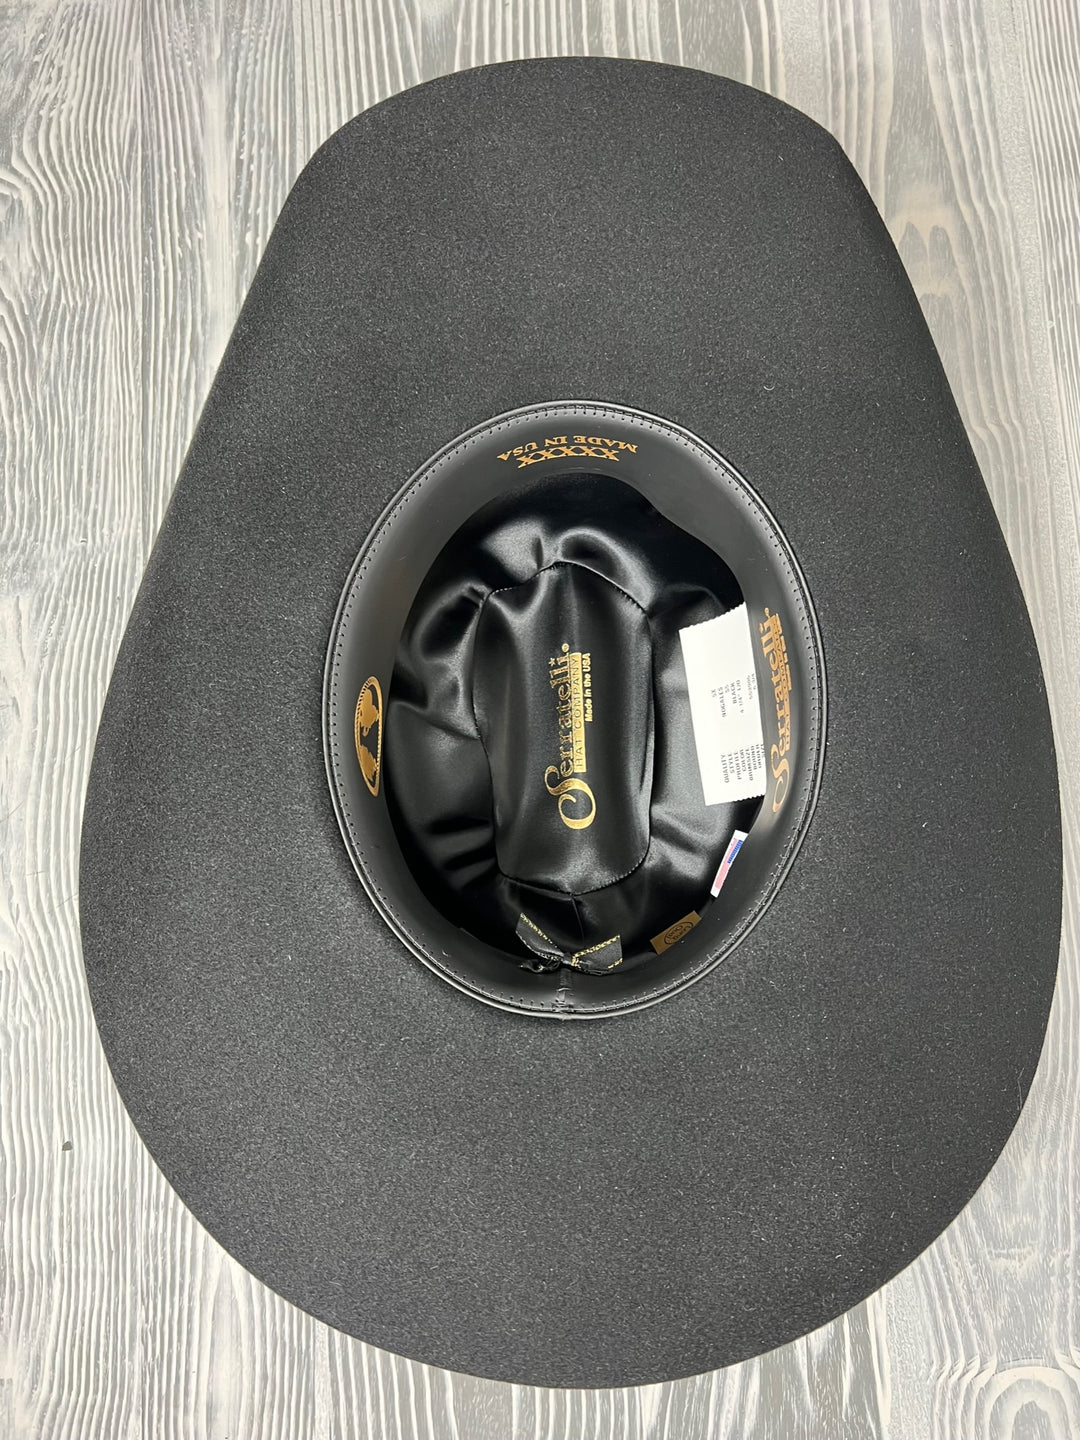 Serratelli 5X Nogales Black Felt  4 1/4" Brim Cowboy Hat